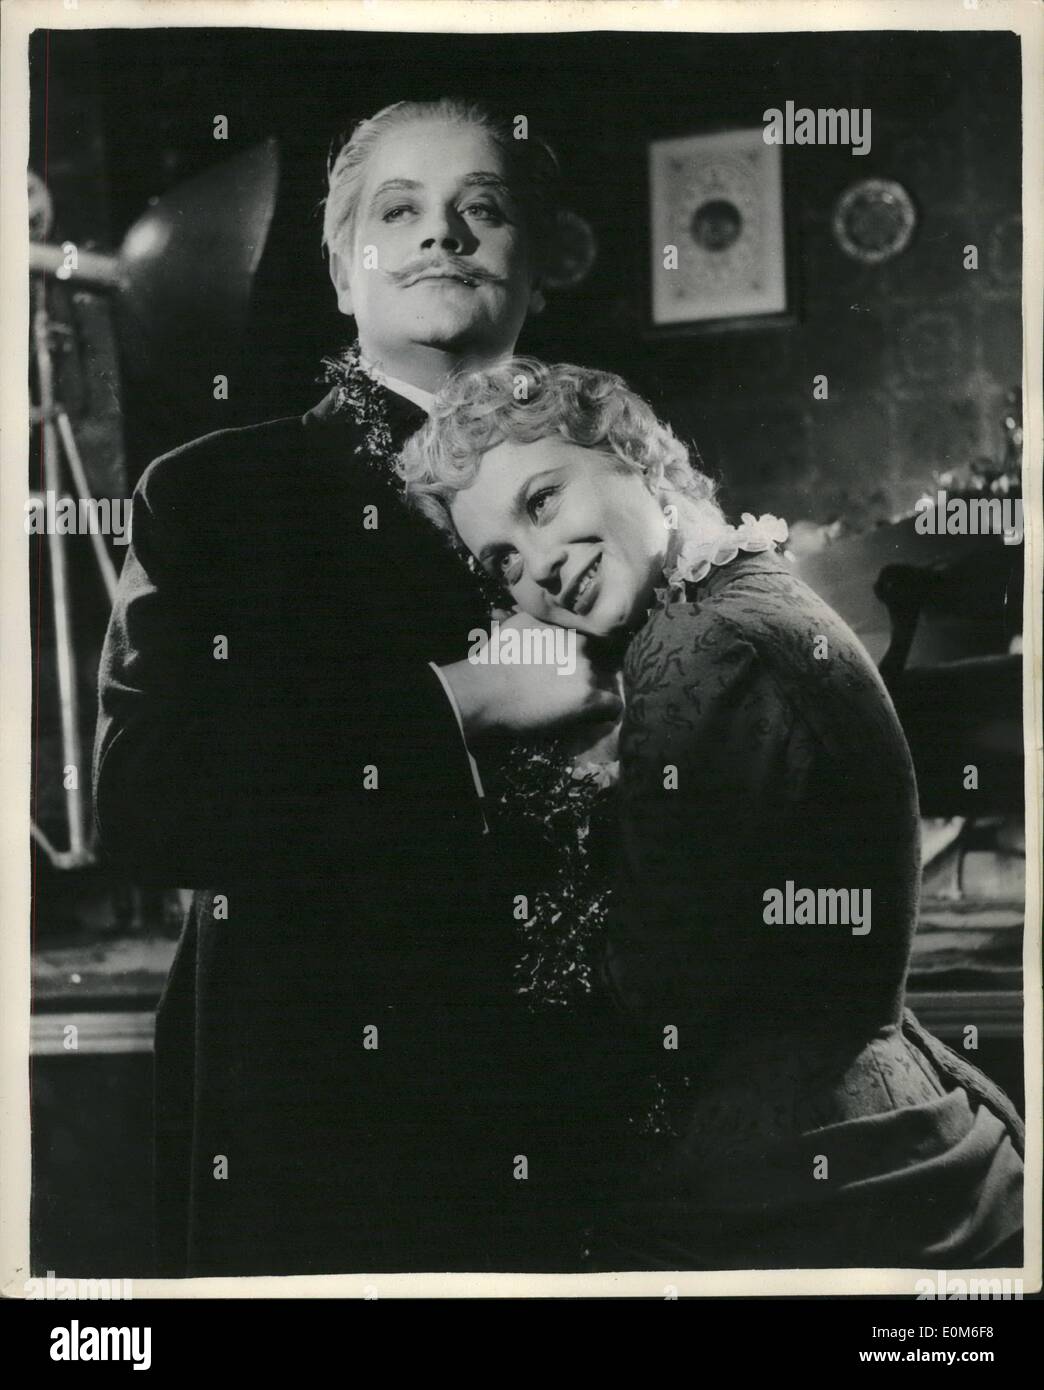 Sept. 09, 1953 - Stars aus Skandinavien spielen die Hauptrolle in Ibsen-Show in London. Nai Zerrerling der berühmten schwedischen Bildschirm-Star und Mogers mit dem Hauptdarsteller in Dänemark spielen die Hauptrollen in Ibsens '' A Doll's House'' - am Lyric Theatre, Hammeramith, Nai übernimmt den Part von Nora die junge Frau und Nogens spielt des stern Mannes Thorwald Helmer - er ist 33. Foto zeigt Nogens Wieth und Mai Zetterling gesehen, wie sie ihre Teile in Proben '' ein Puppenheim " Stockfoto